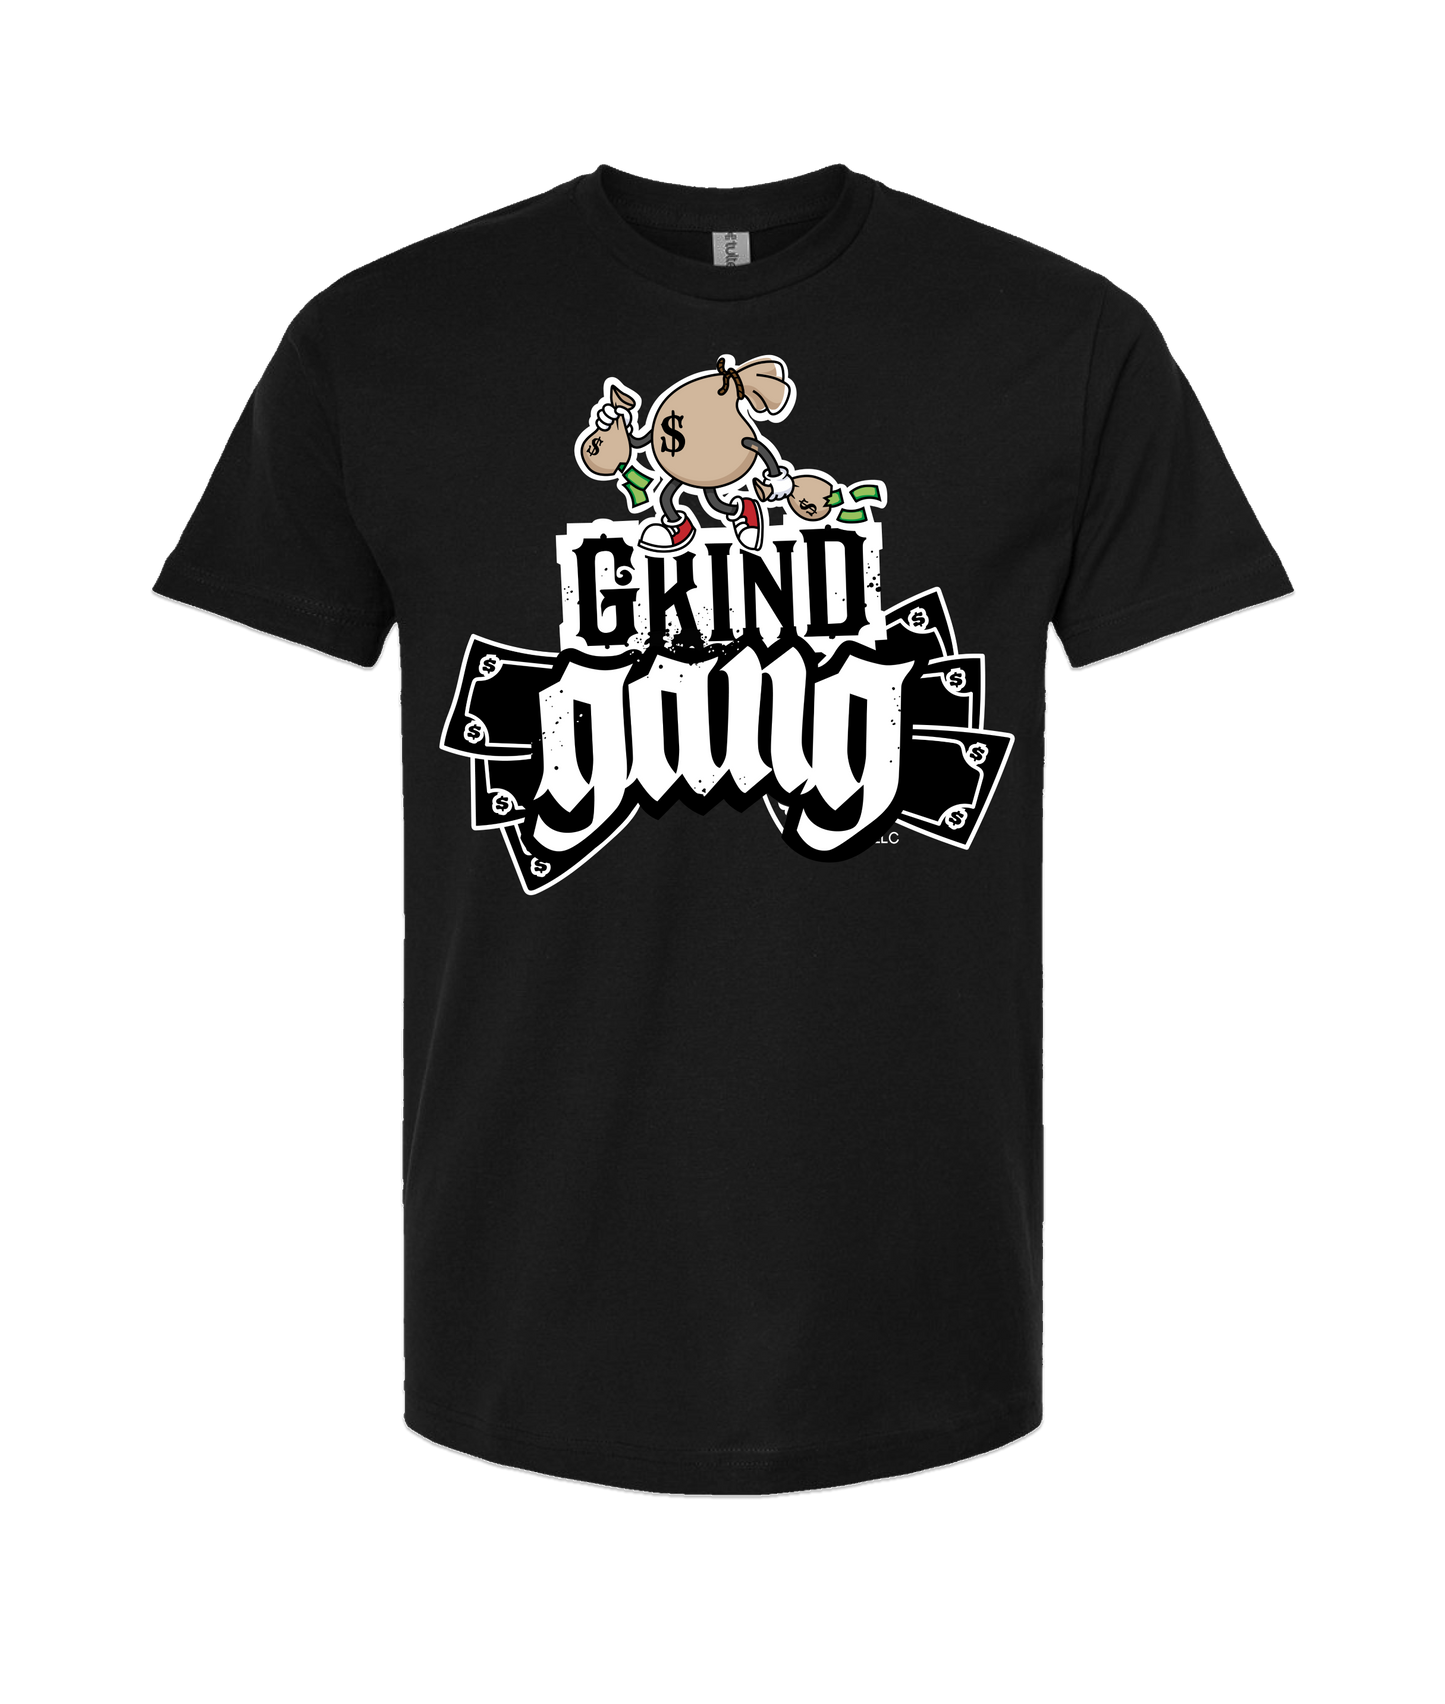 GRIND GANG ENT. LLC - MONEY BAG LOGO 2 - Black T-Shirt